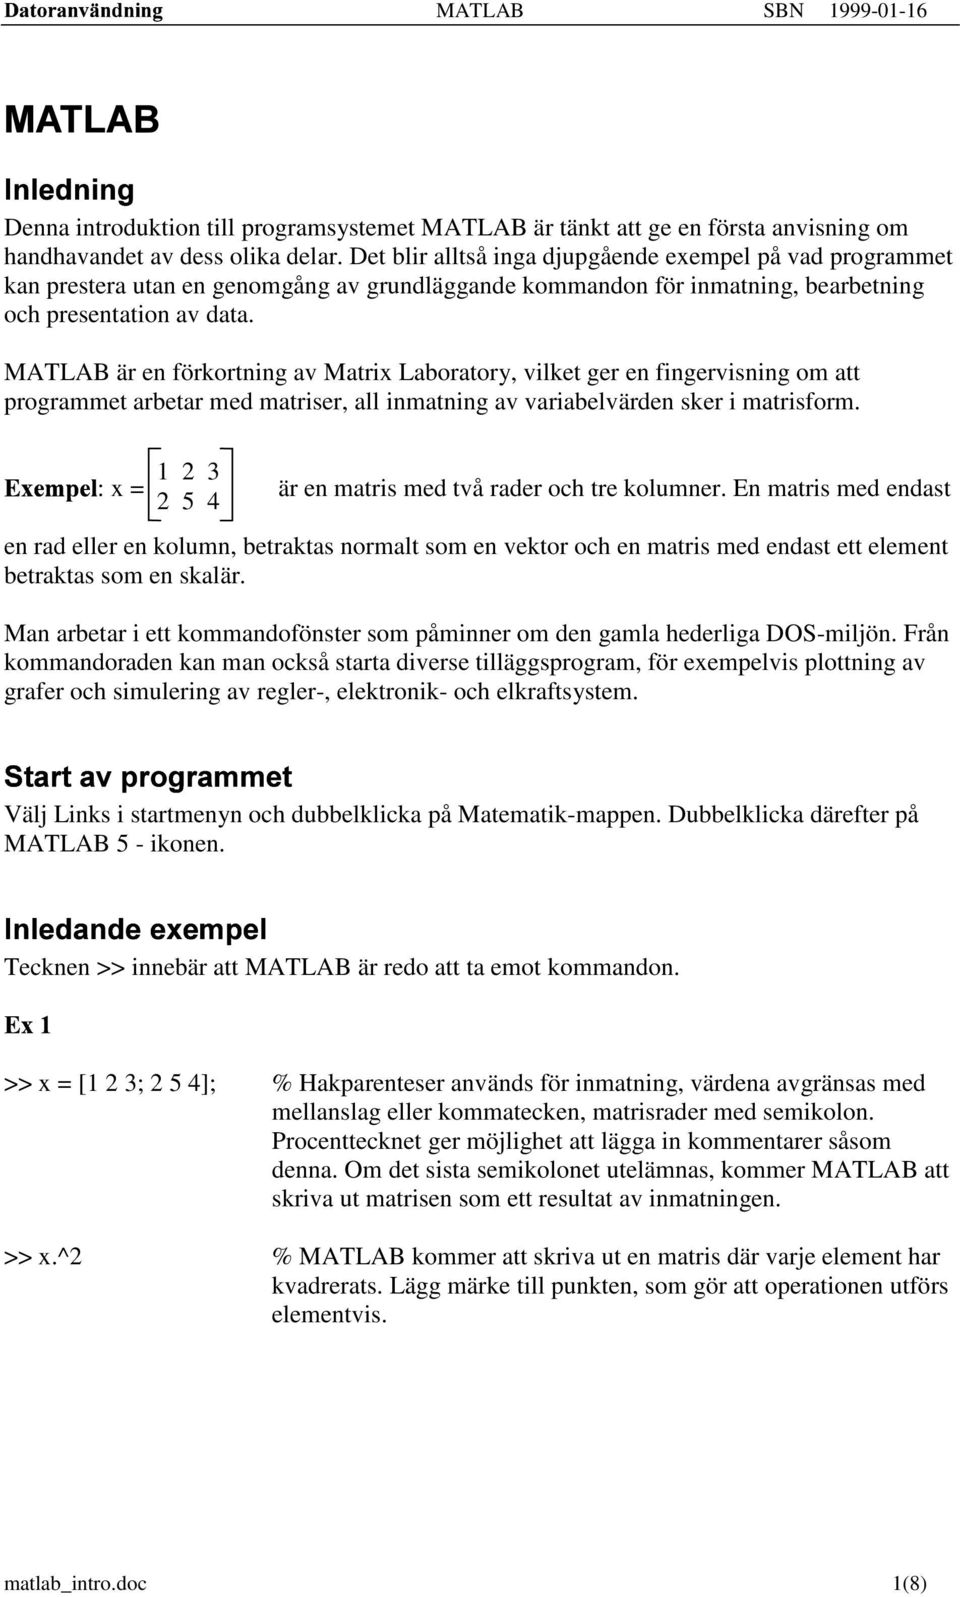 MATLAB är en förkortning av Matrix Laboratory, vilket ger en fingervisning om att programmet arbetar med matriser, all inmatning av variabelvärden sker i matrisform. "!